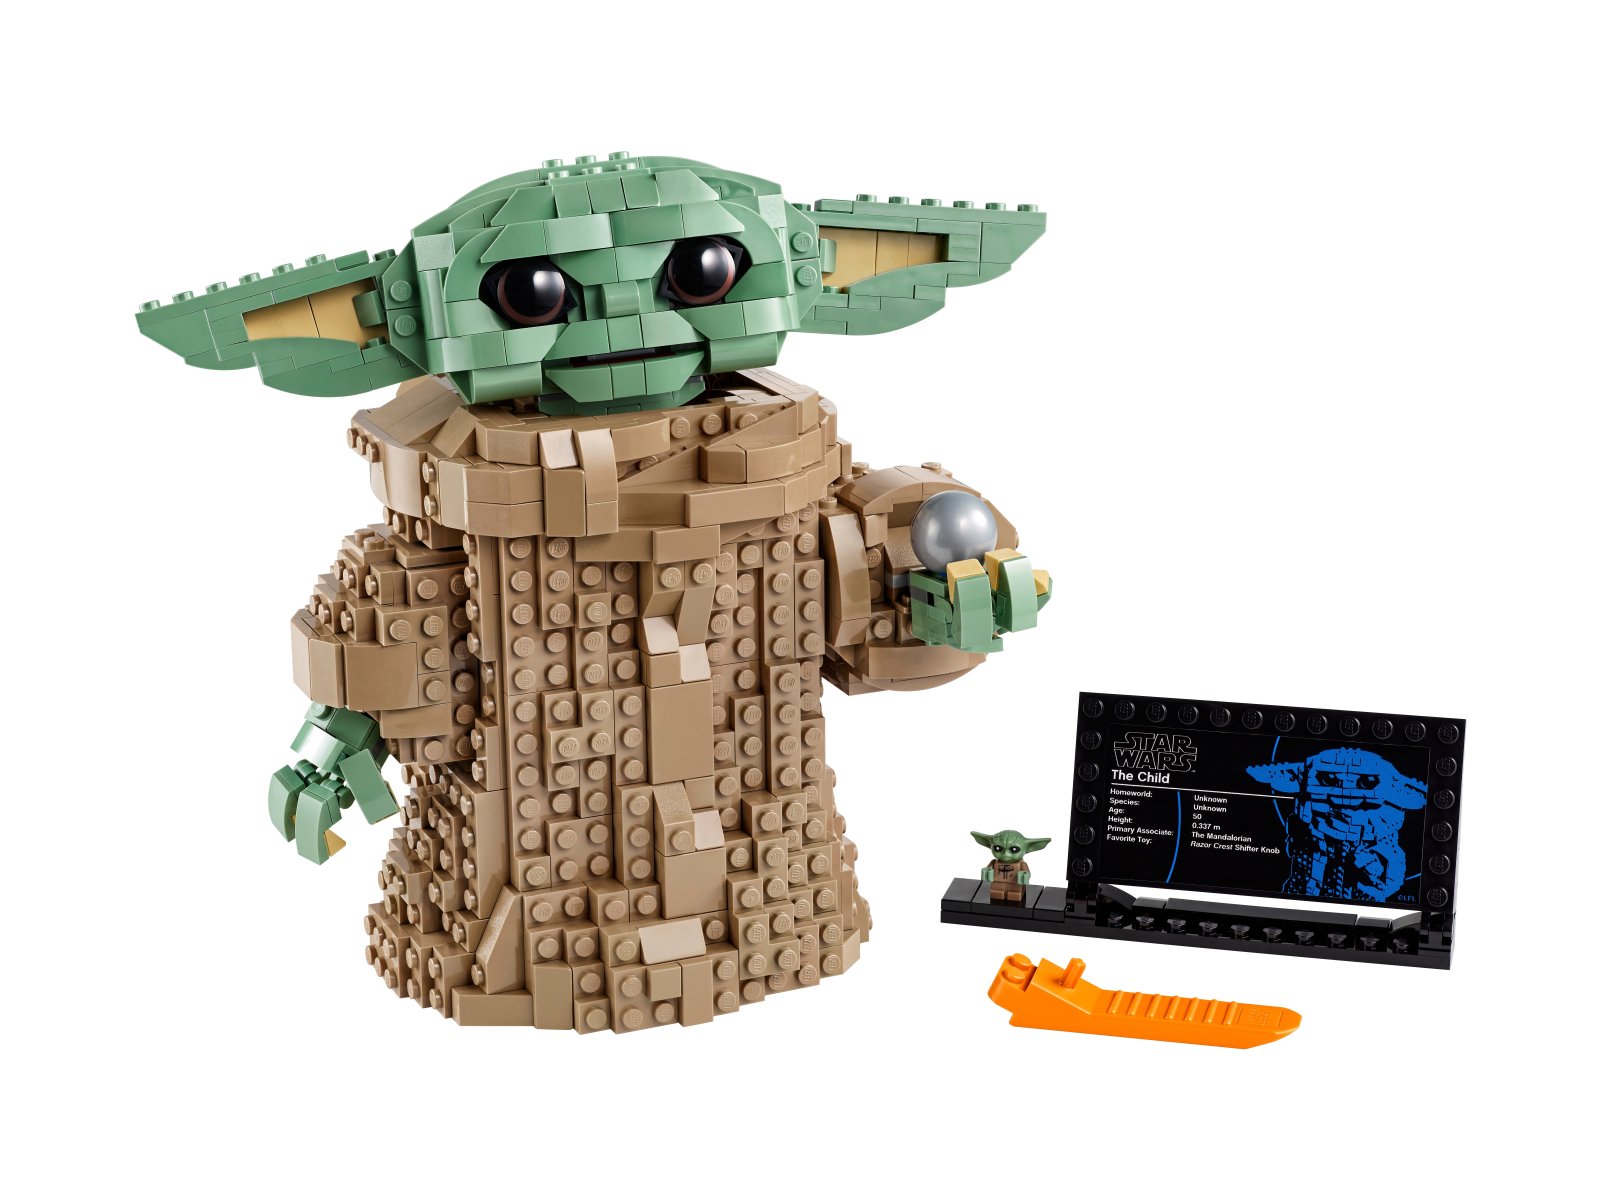 LEGO Star Wars Dziecko (Baby Yoda) 75318